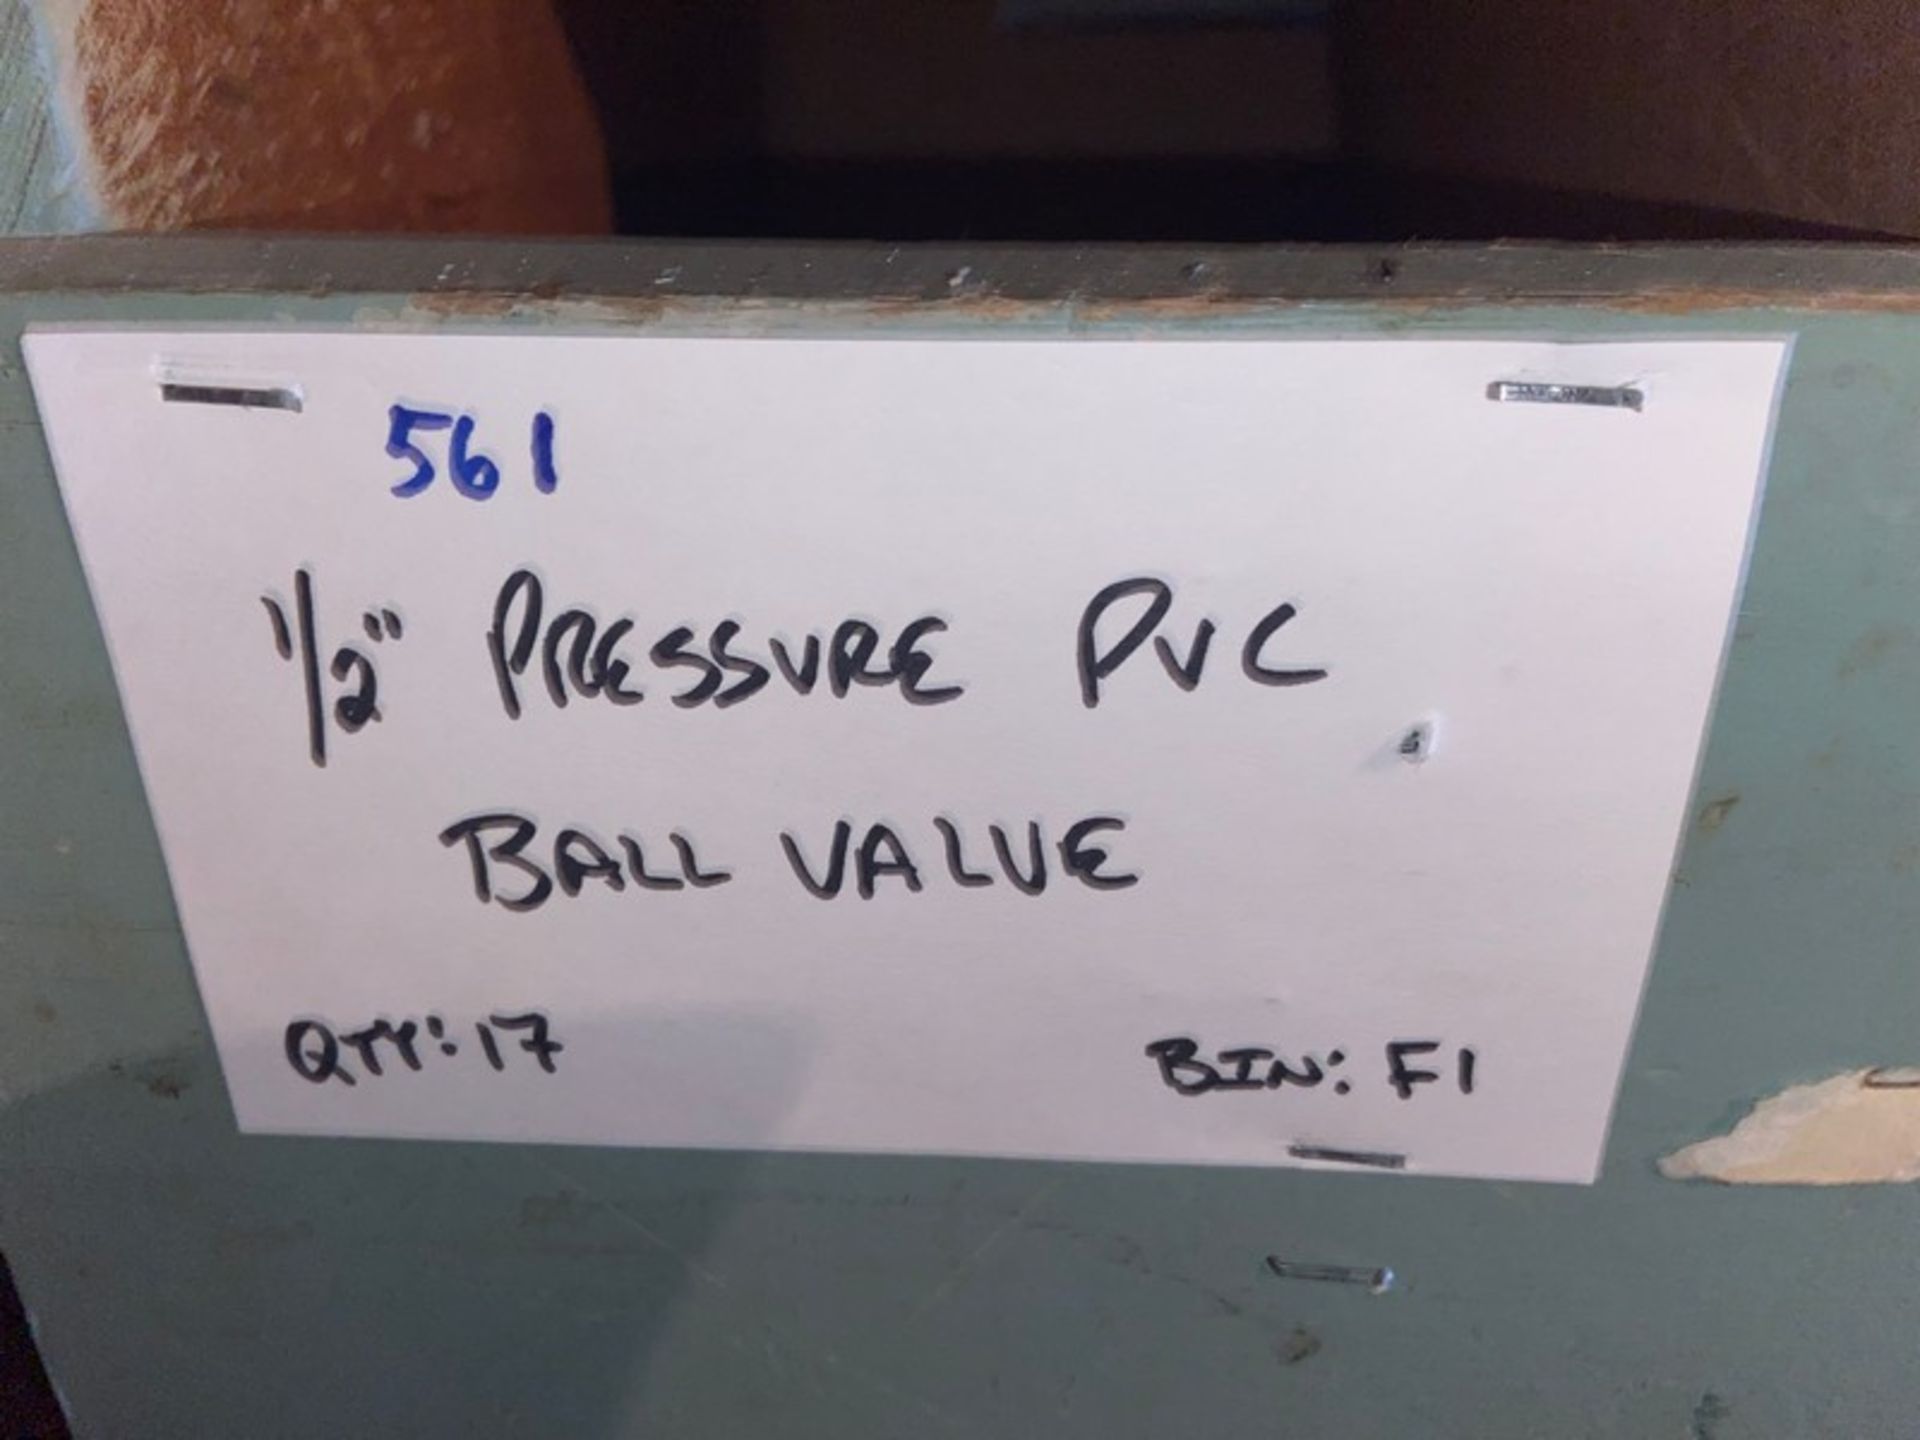 (17) 1/2" Pressure PVC Ball Valve (Bin: F1); (15) 1/2" Pressure PVC Coupling (Bin: F1) (LOCATED IN - Bild 11 aus 11